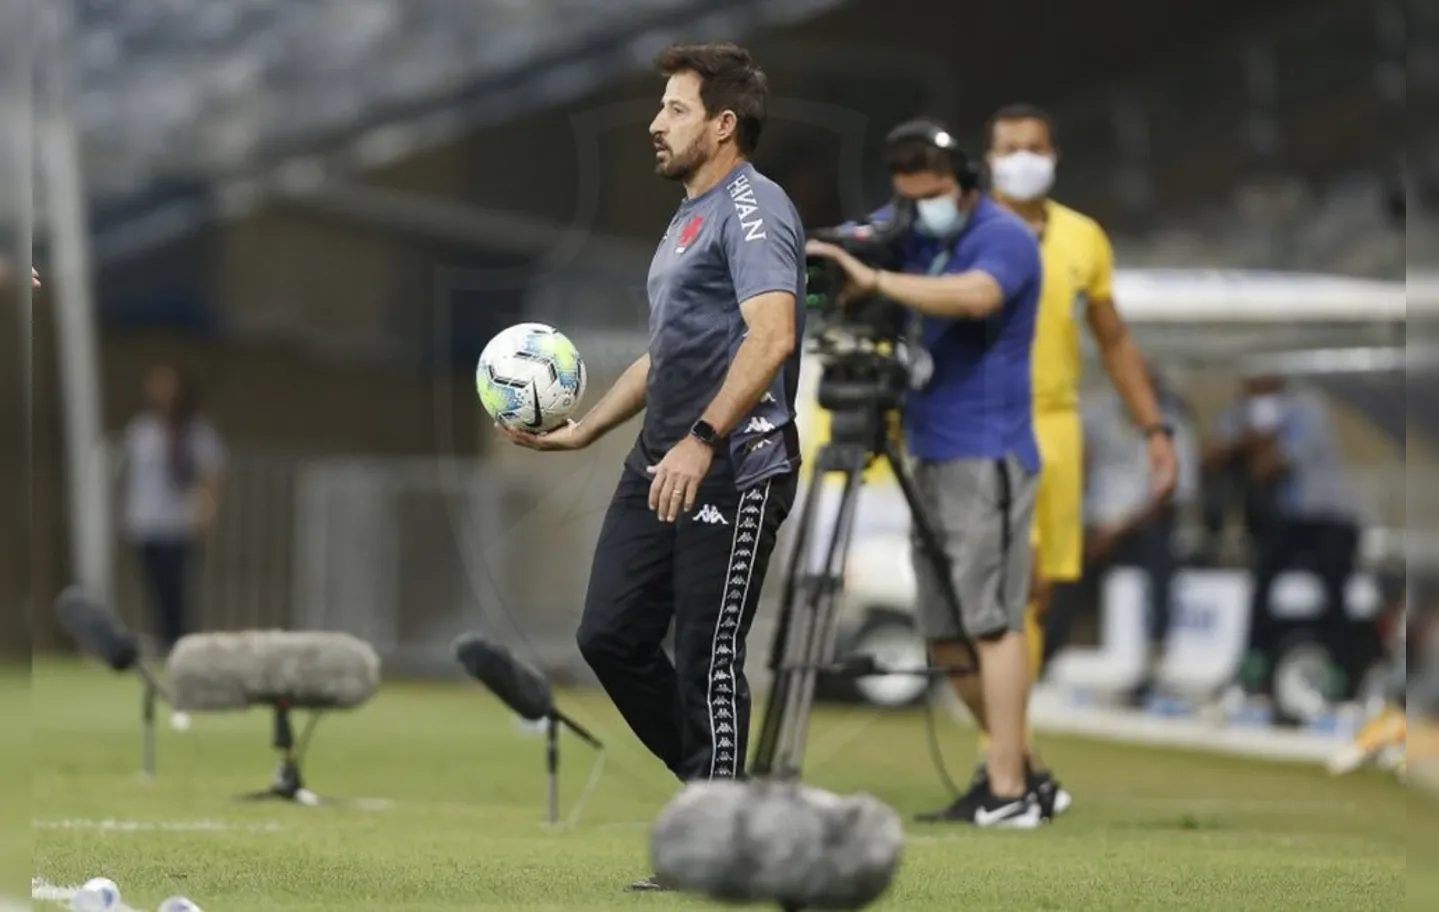 Treinador é desligado do comando da equipe após derrota por 3 x 0 para o Bahia | Foto: Rafael Ribeiro | Vasco